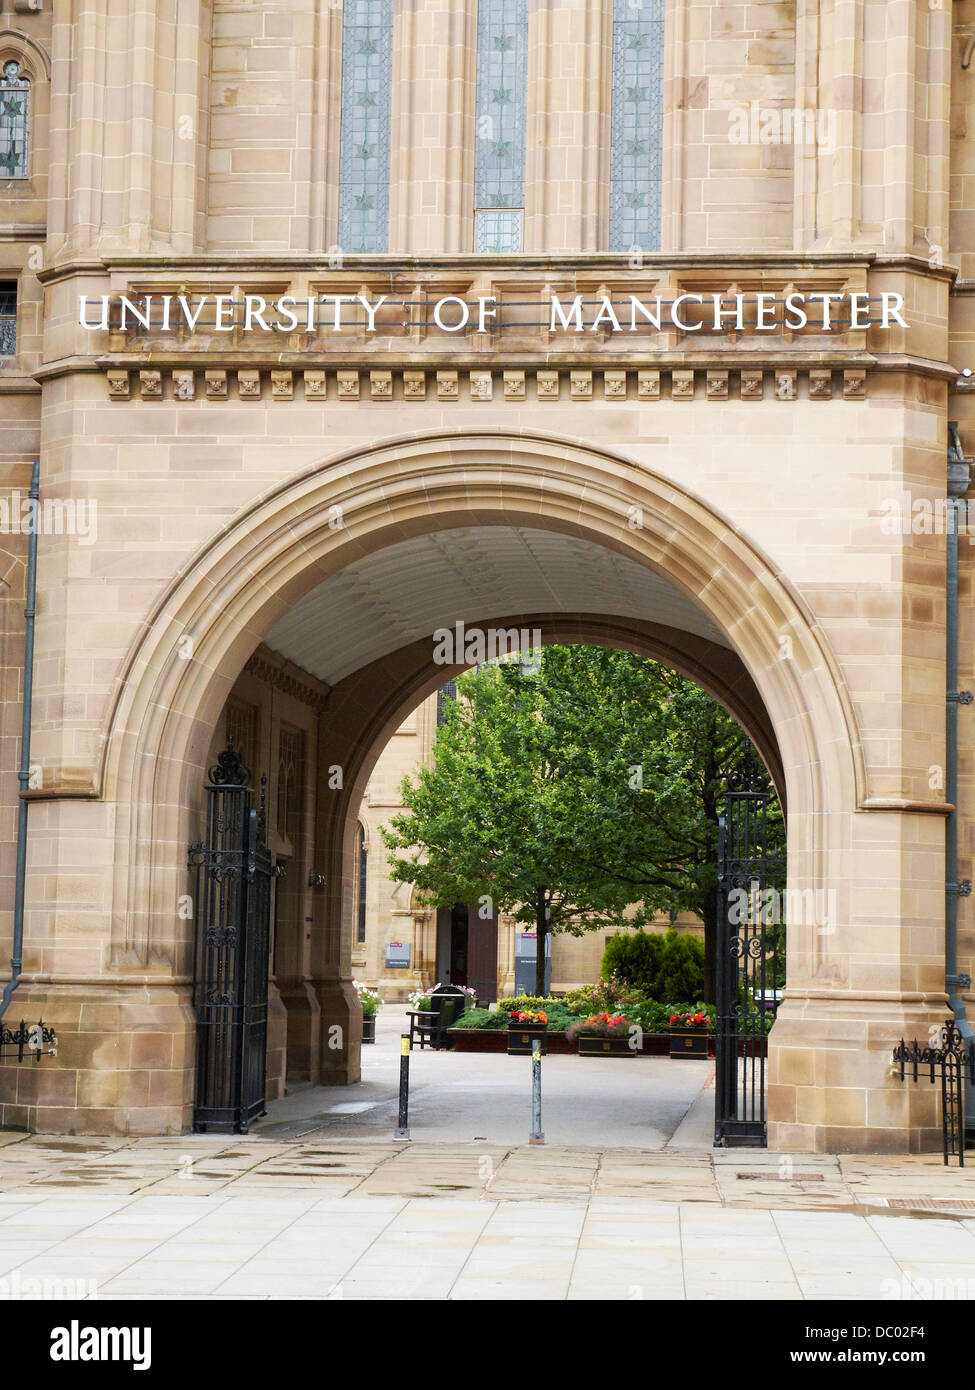 Entrance to University of Manchester UK Stock Photo